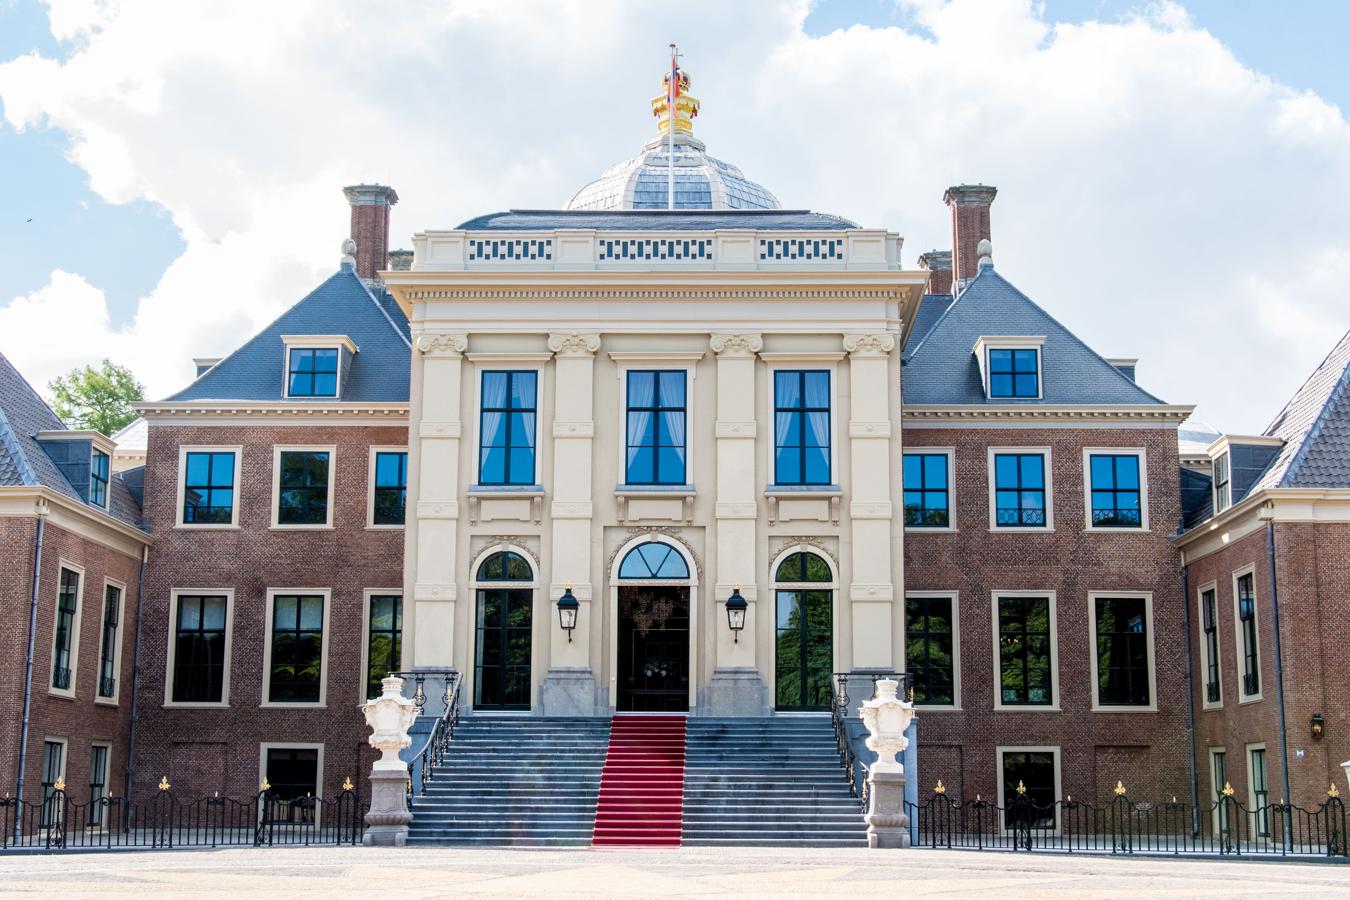 Huis ten Bosch, la residencia de Máxima y Guillermo de Holanda. Situada en La Haya, su nombre significa 'La casa del Bosque' ya que se encuentra rodeada de una vasta vegetación que les aporta un extra de privacidad a la familia.